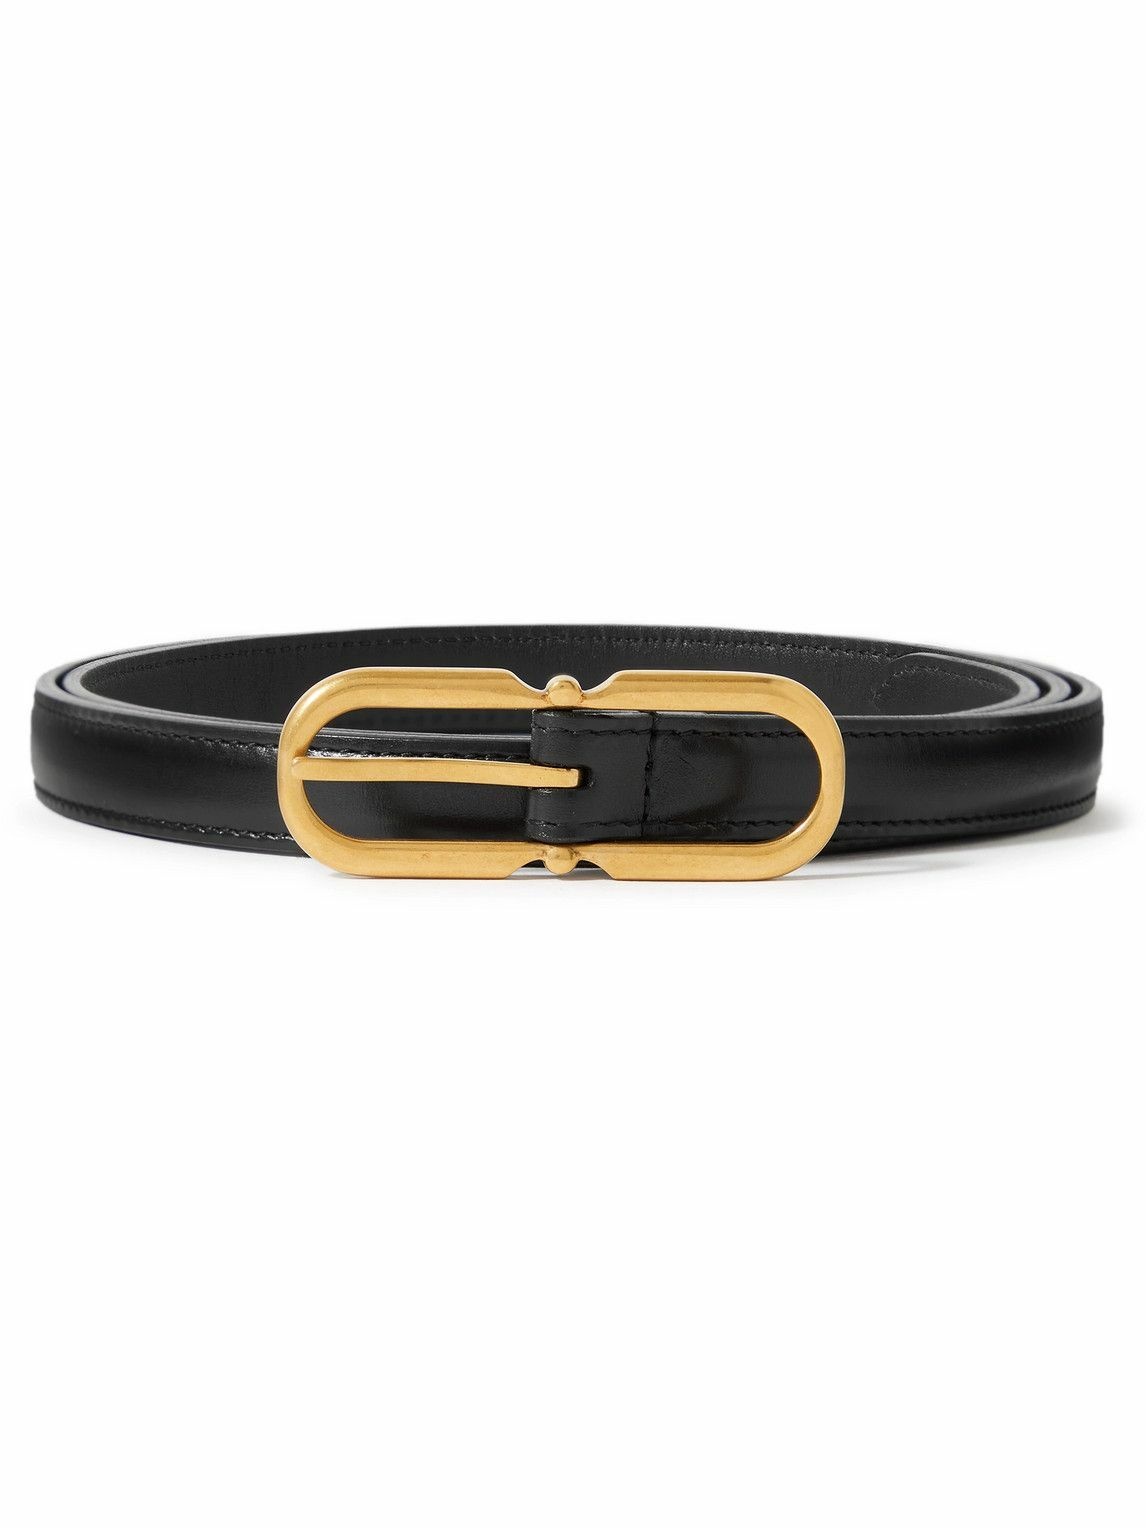 SAINT LAURENT - 2.5cm Leather Belt - Black Saint Laurent